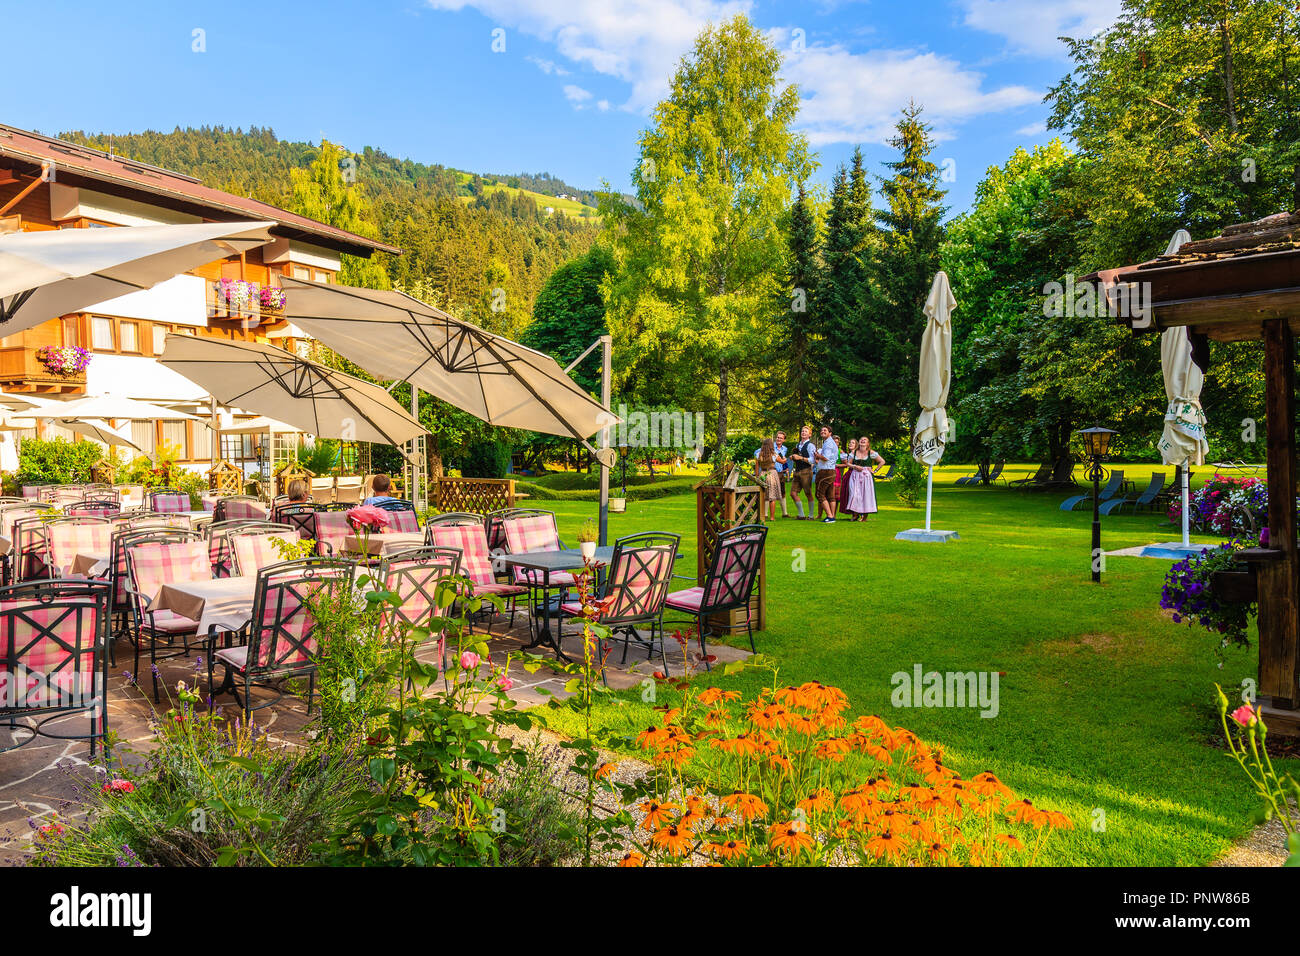 KIRCHBERG IN TIROL, Austria - Agosto 4, 2018: Ristorante in giardino verde in un lussuoso hotel alpino sul giorno di estate. Kirchberg è un villaggio di montagna situato in Foto Stock